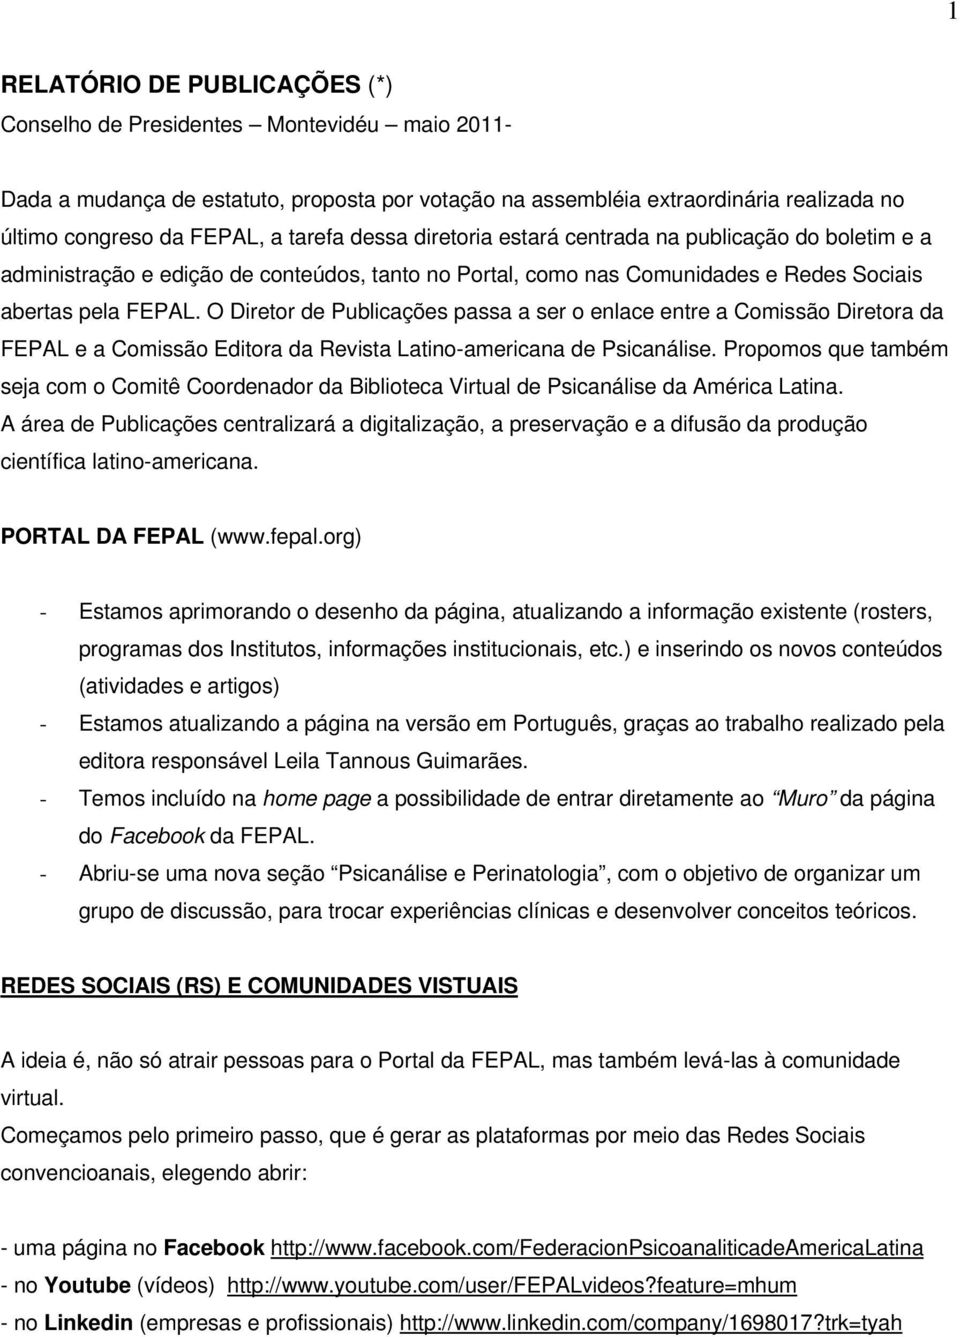 O Diretor de Publicações passa a ser o enlace entre a Comissão Diretora da FEPAL e a Comissão Editora da Revista Latino-americana de Psicanálise.